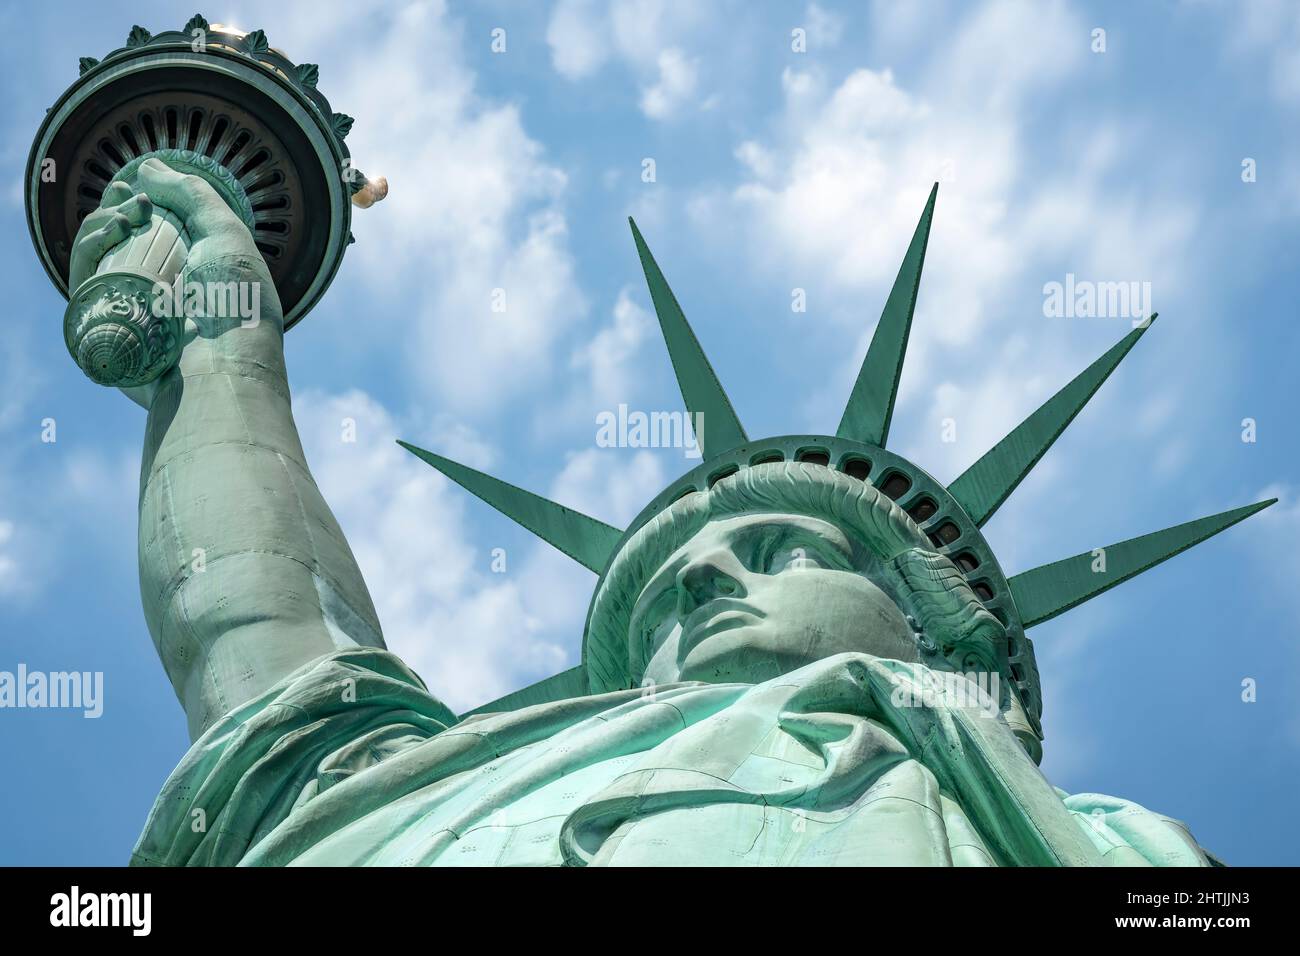 La Statua della Libertà in piedi sul Liberty Island nel centro del porto di New York, Manhattan, New York - STATI UNITI D'AMERICA. Foto Stock